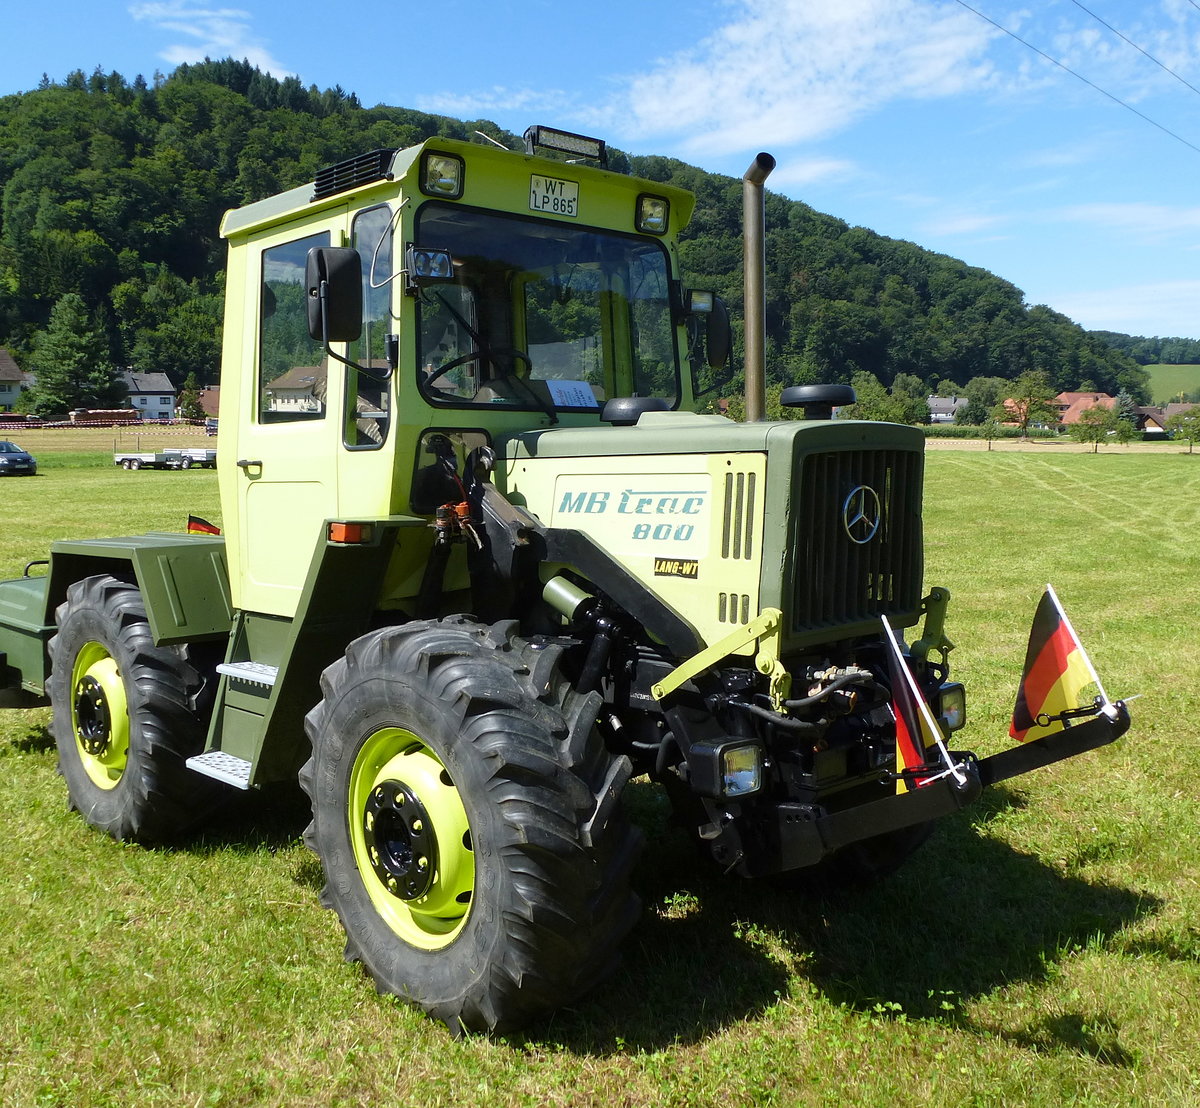 MB trac 800, Baujahre 1975-82, 4-Zyl.Diesel mit 3782ccm und 72PS, Vmax.40Km/h, Schleppertreffen Glottertal, Juli 2017